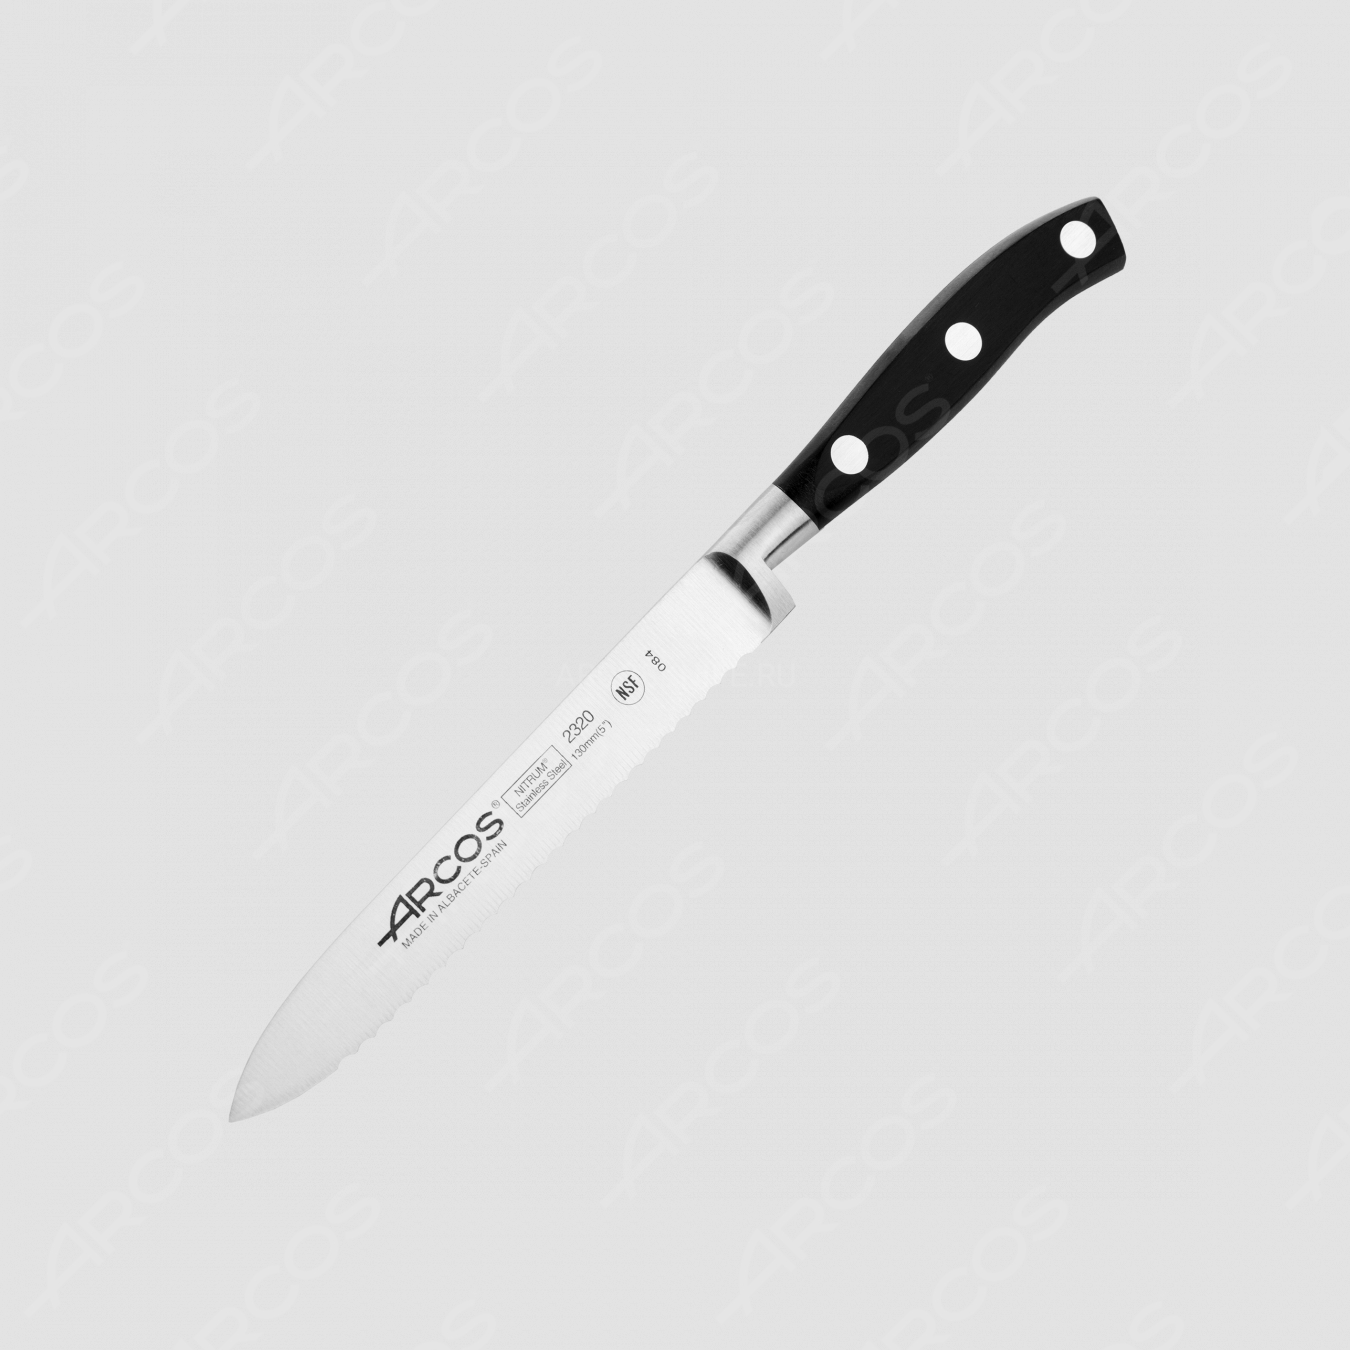 Нож кухонный для томатов 13 см, серия Riviera, ARCOS, Испания